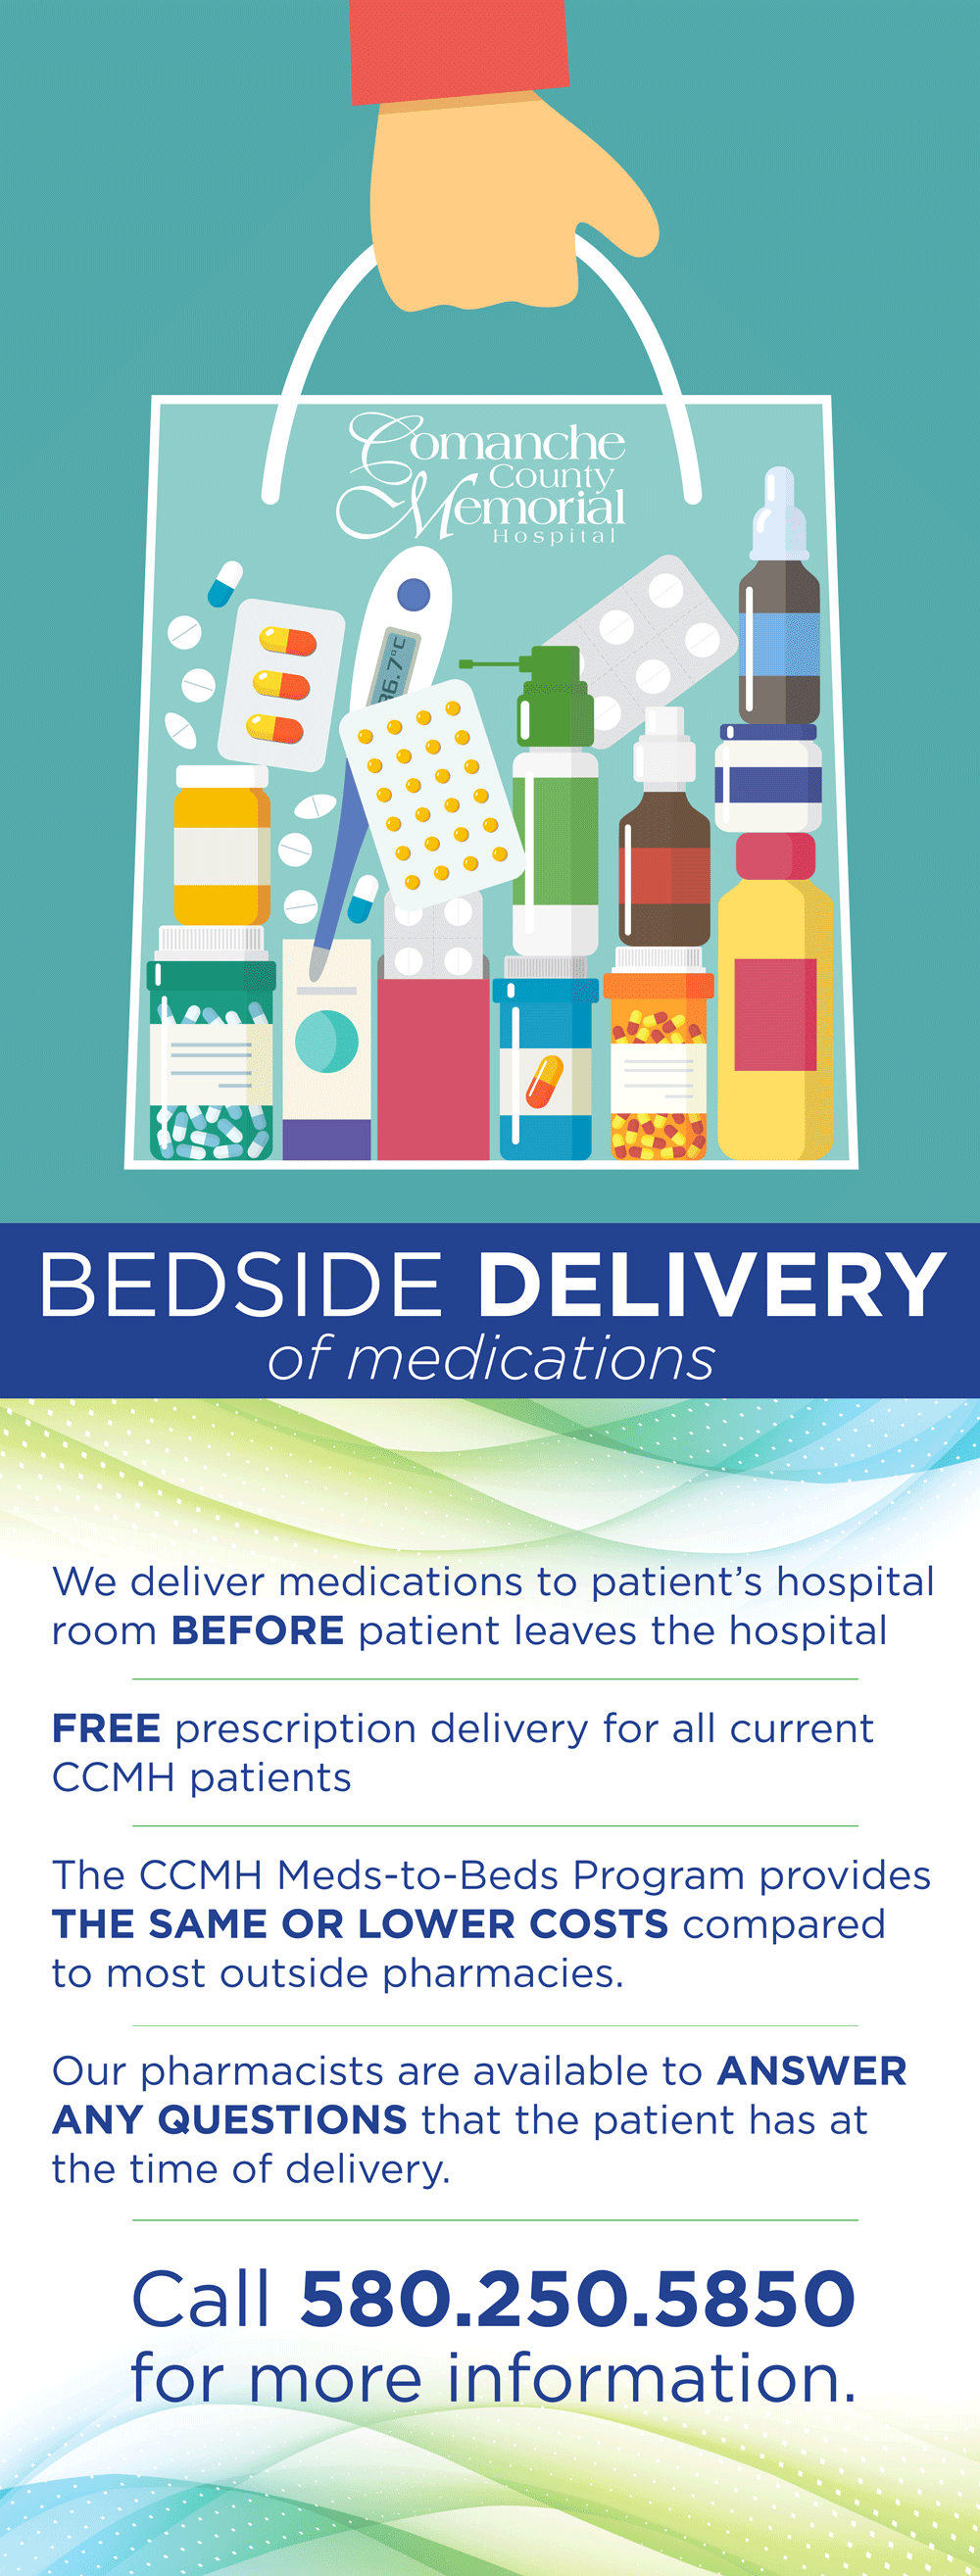 Bedside delivery of medication poster